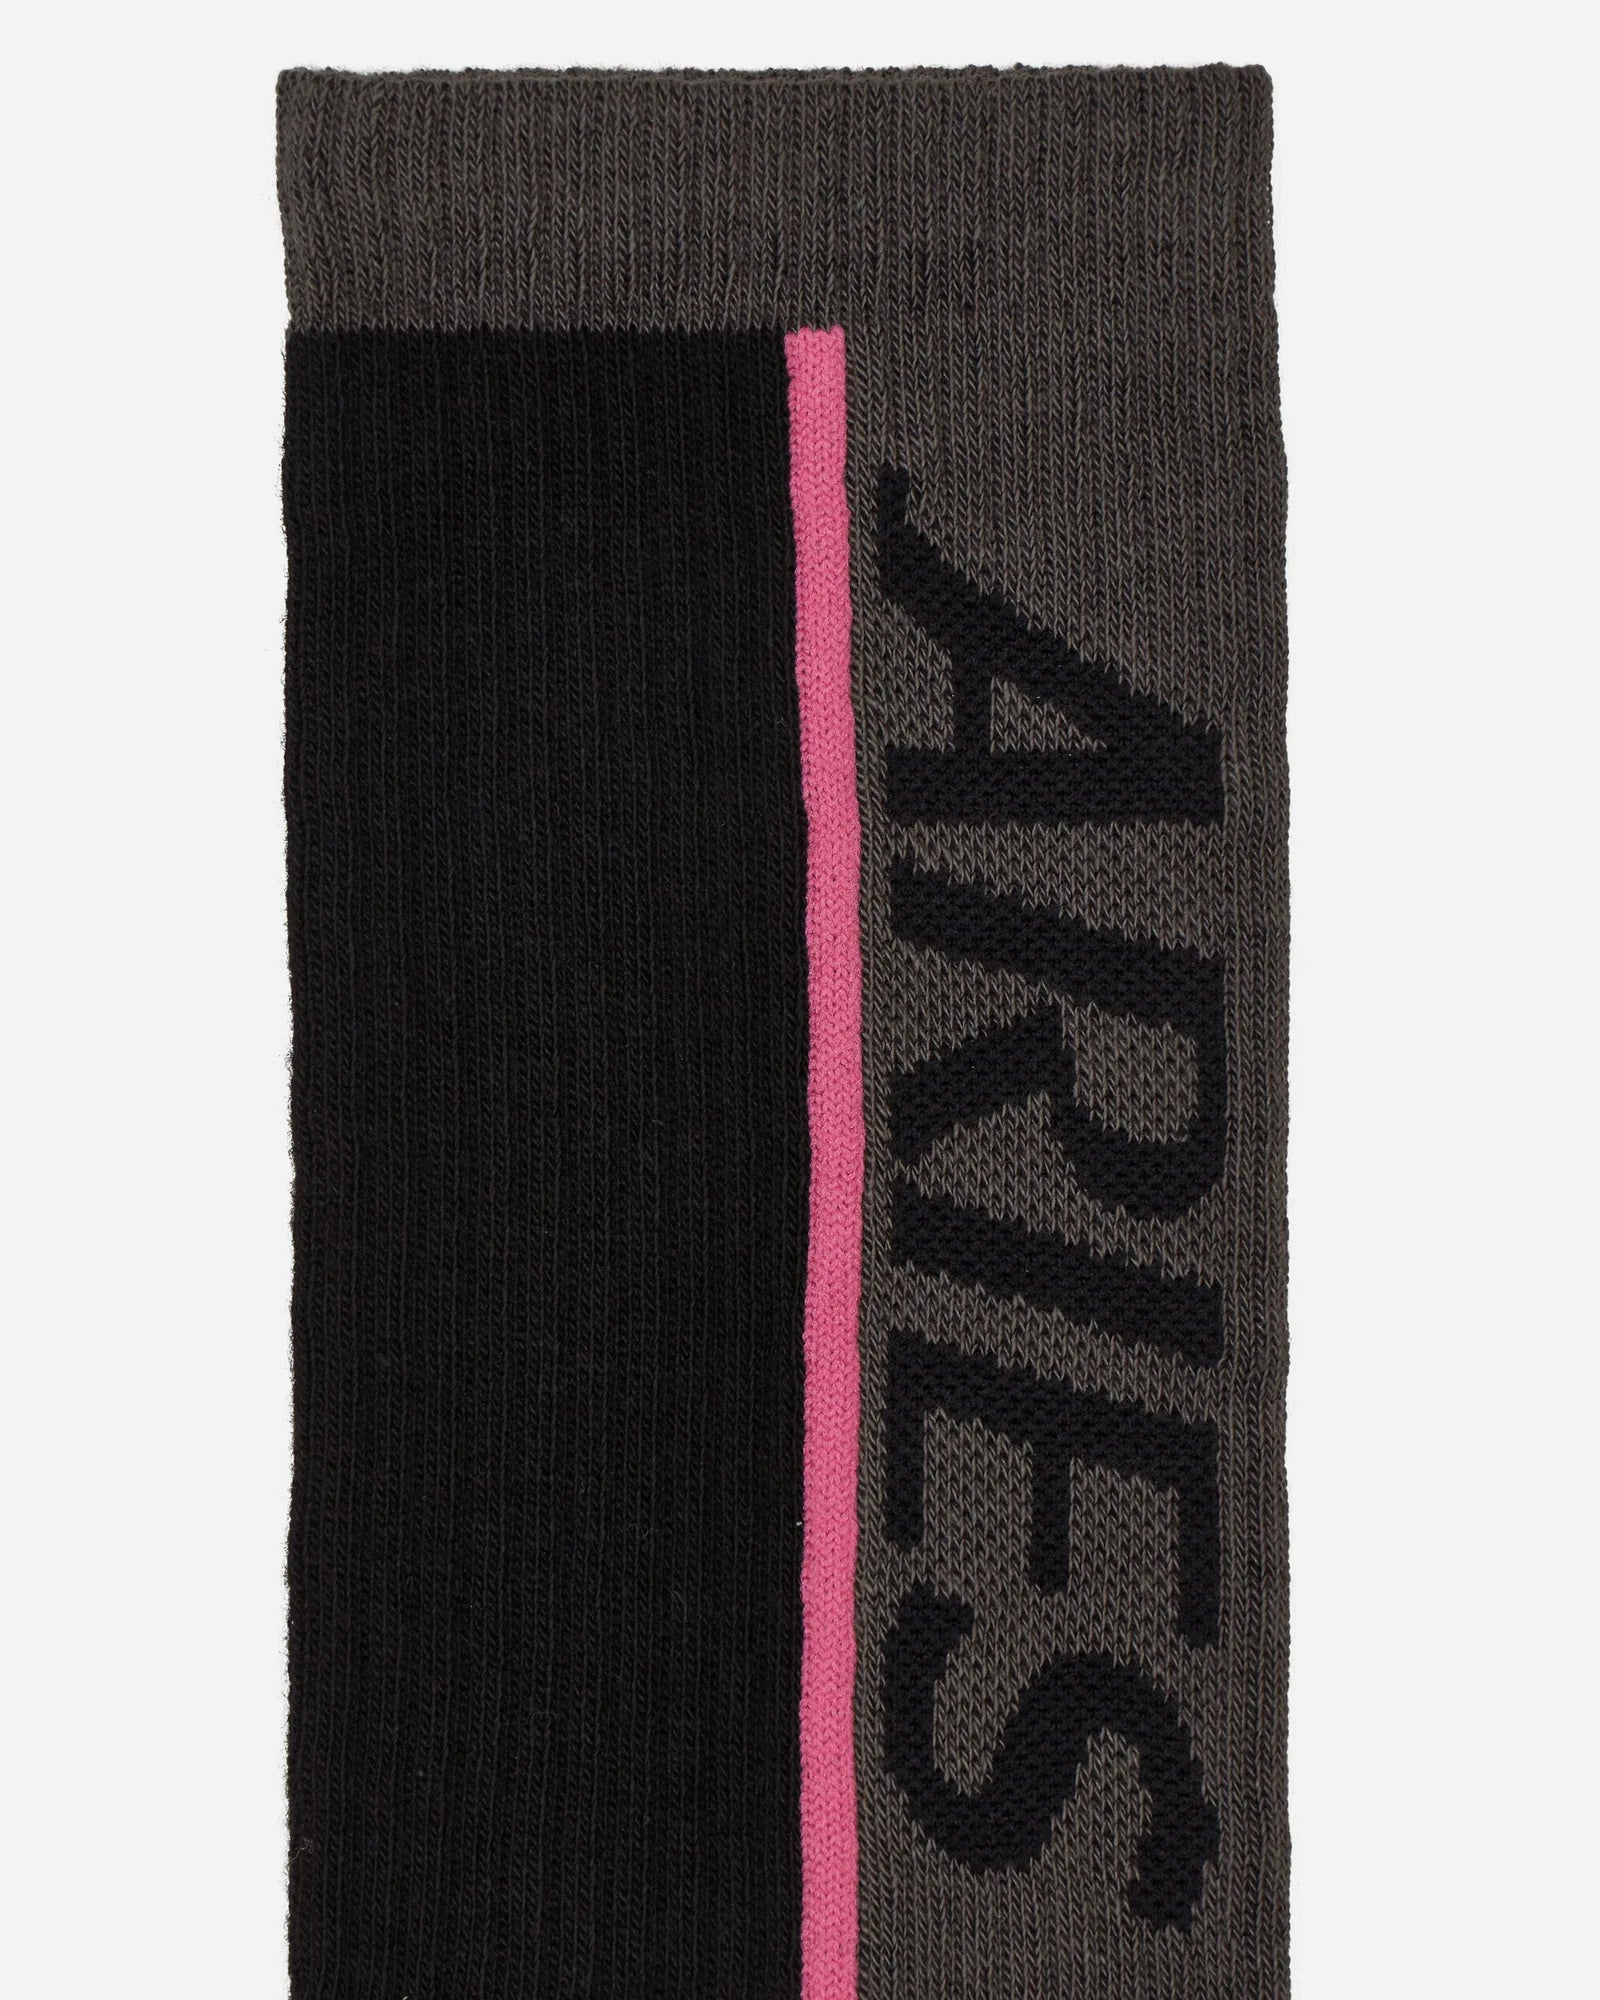 Aries Arise Credit Card Socks - Black